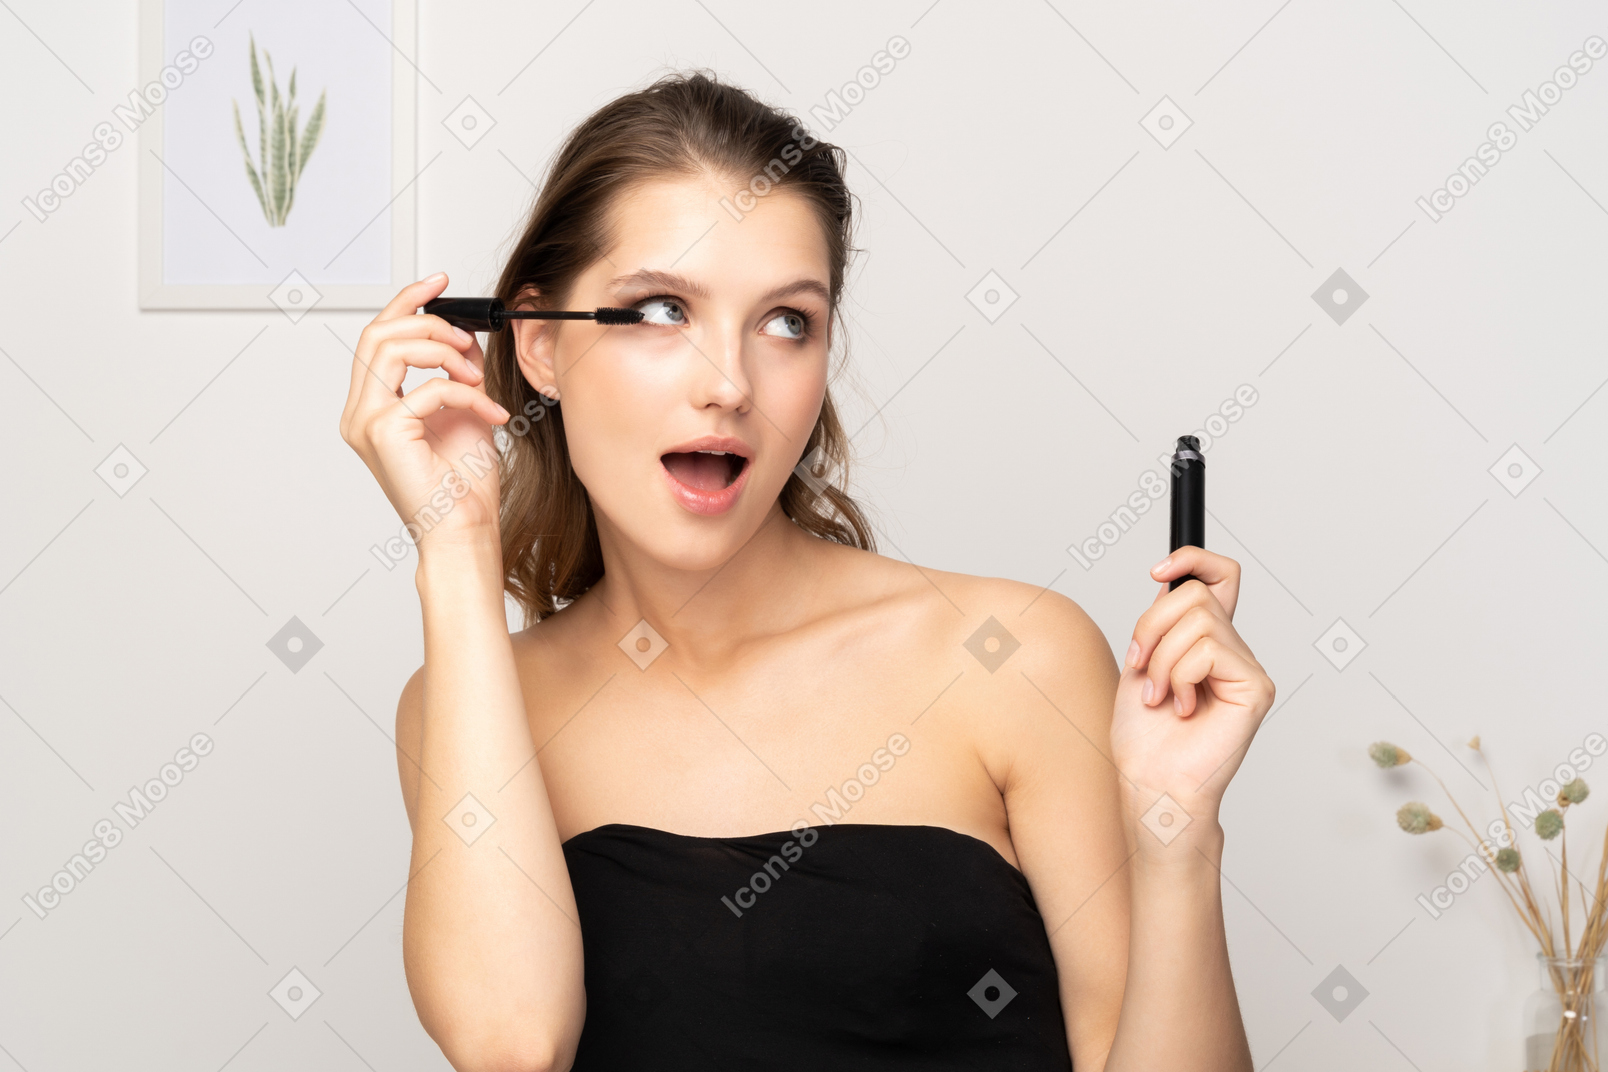 Vista frontal de uma jovem surpresa usando top preto aplicando rímel